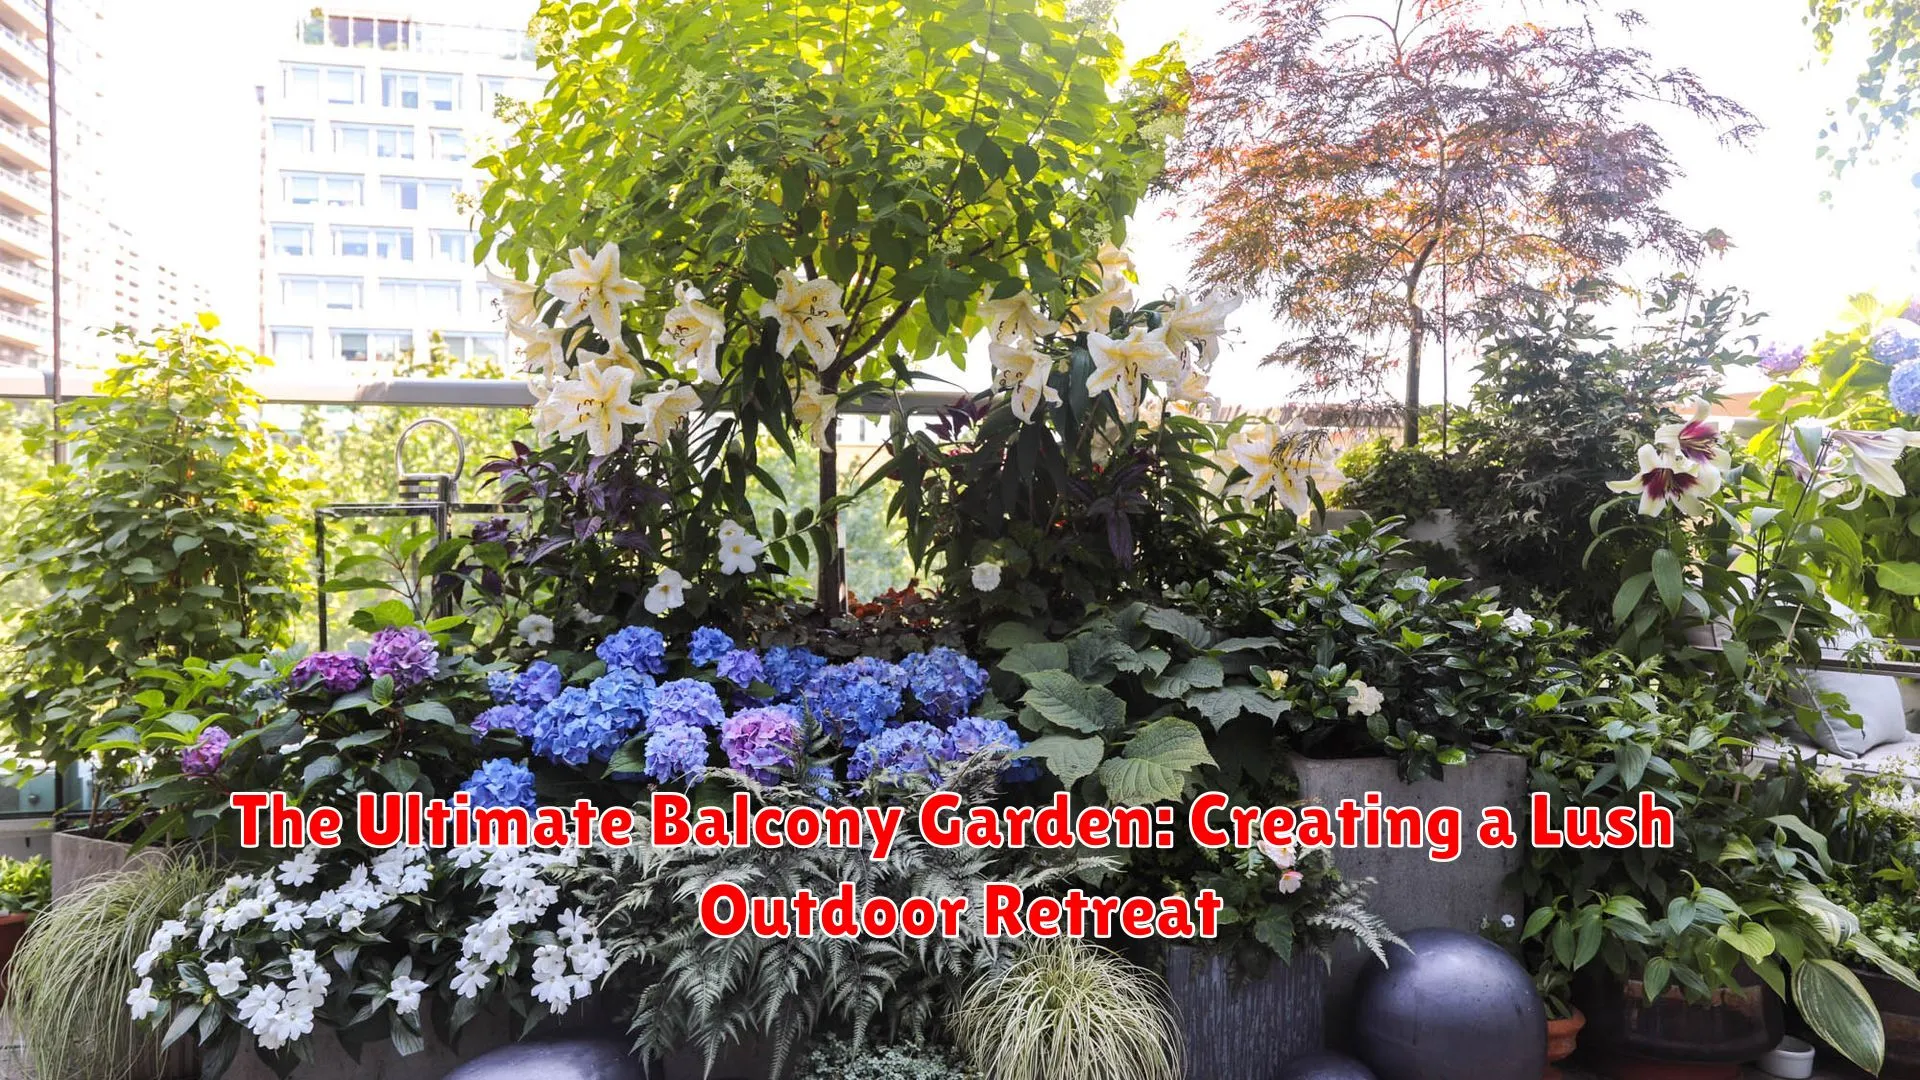 The Ultimate Balcony Garden: Creating a Lush Outdoor Retreat